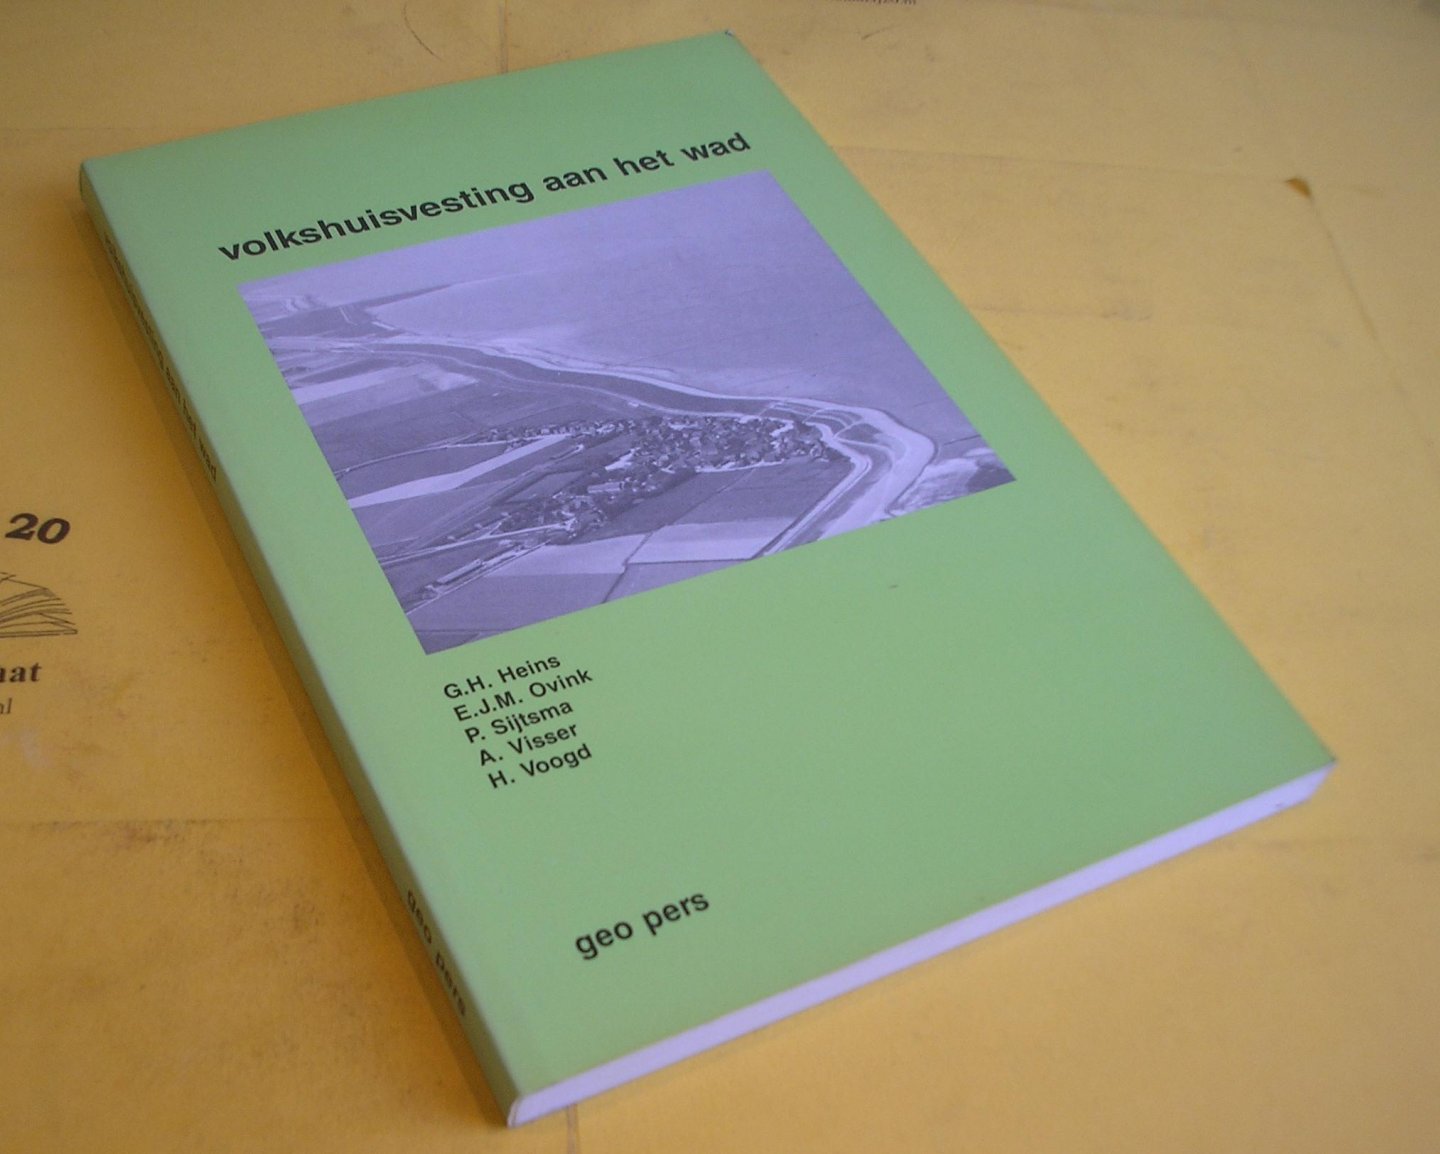 Heins, G.H. e.a. - Volkshuisvesting aan het Wad. Een onderzoek naar de volkshuisvestingssituatie in het noorden van Friesland.